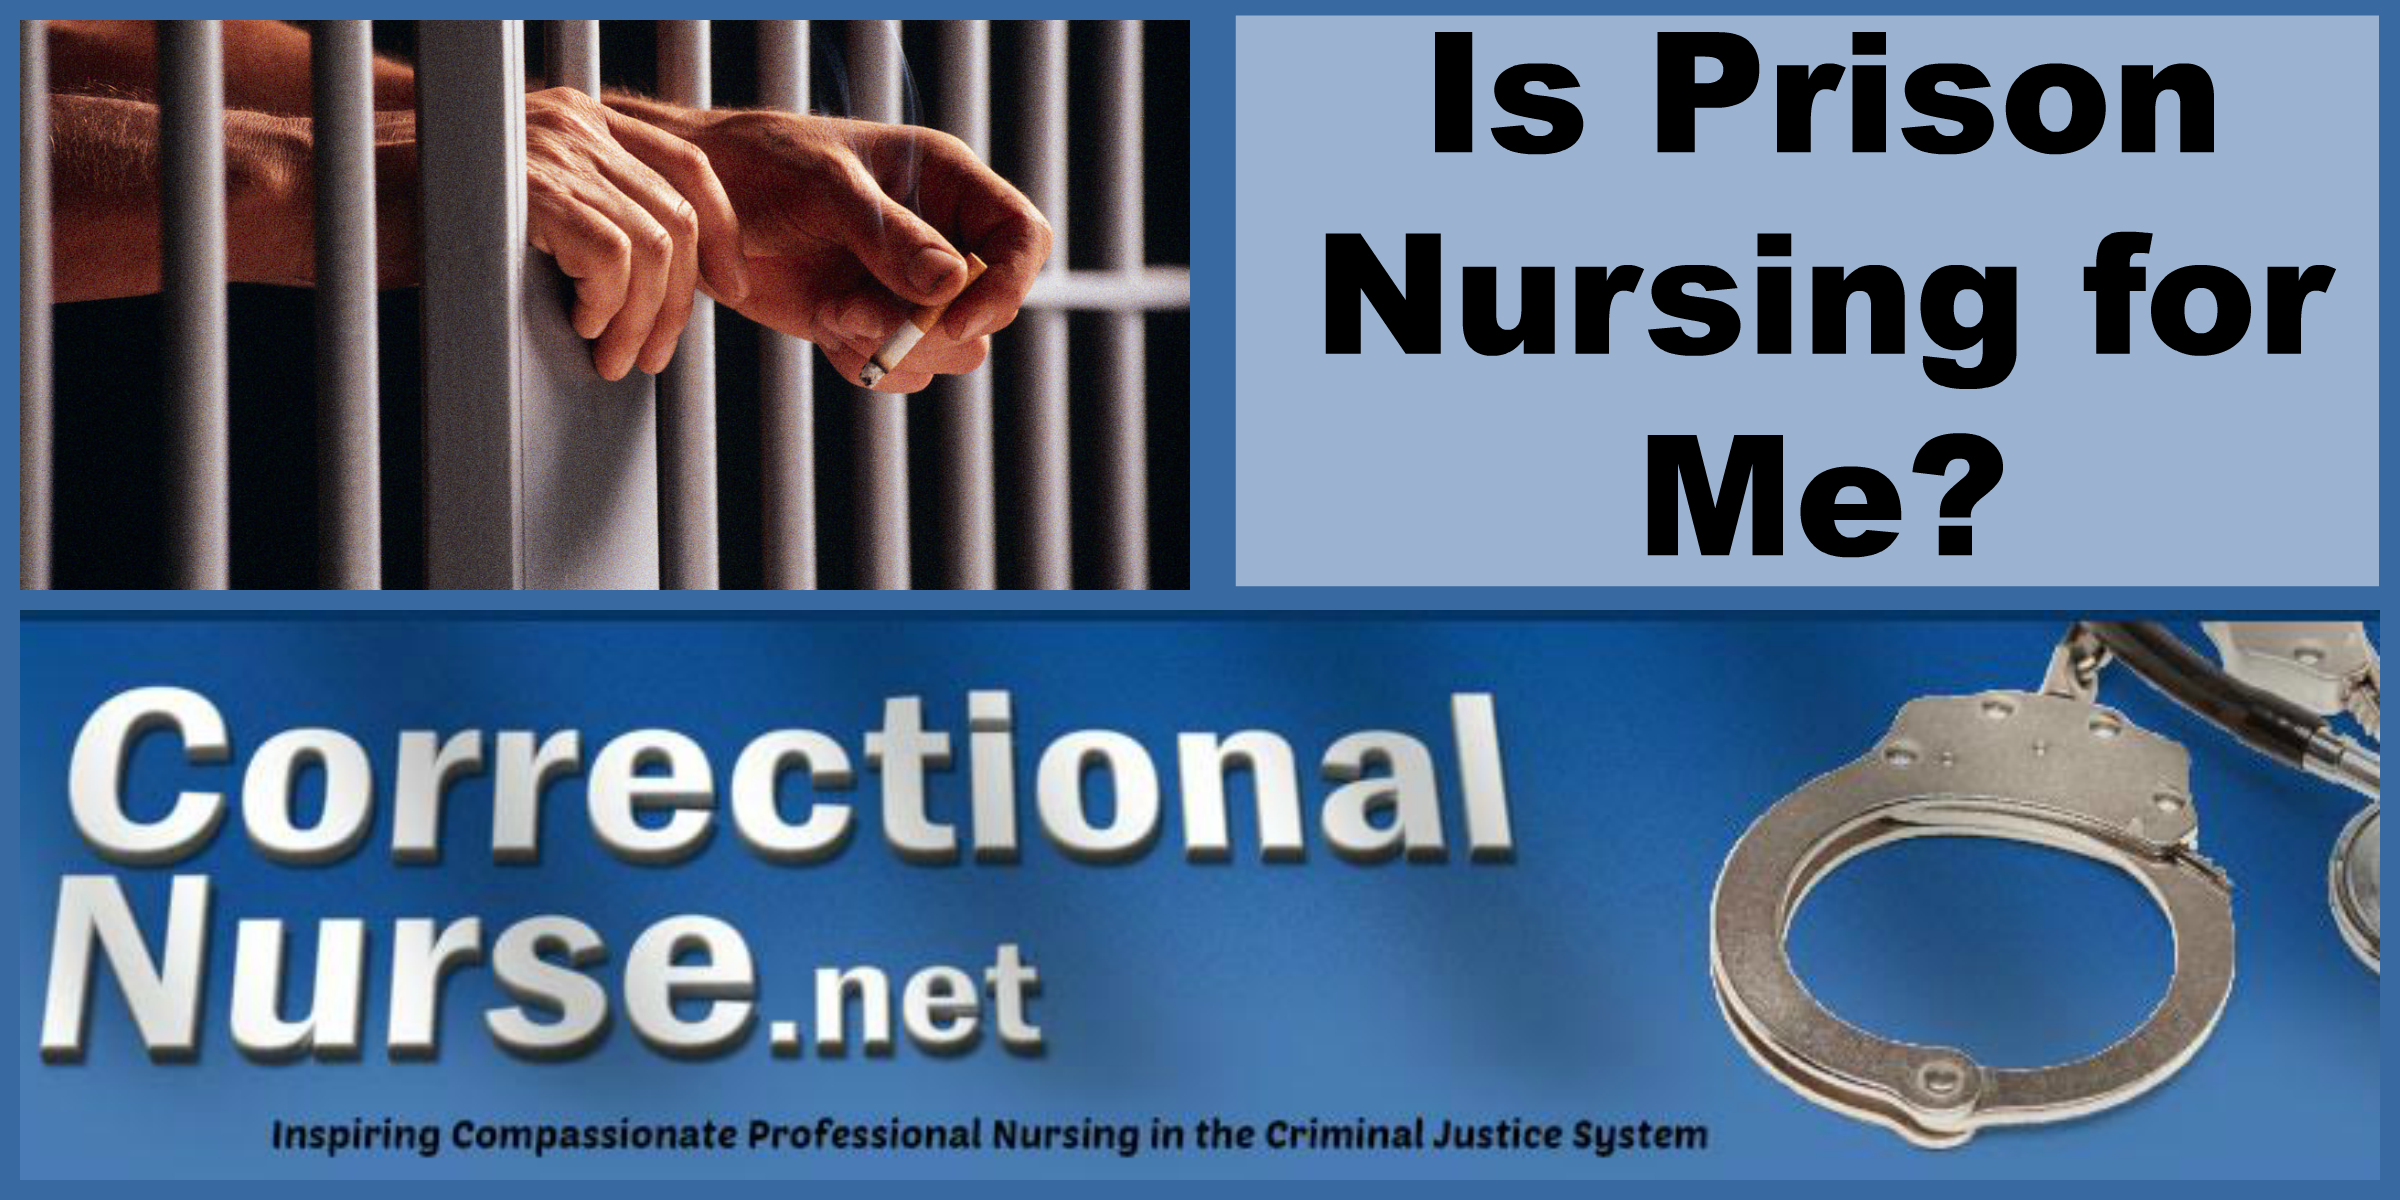 Is Prison Nursing for Me?